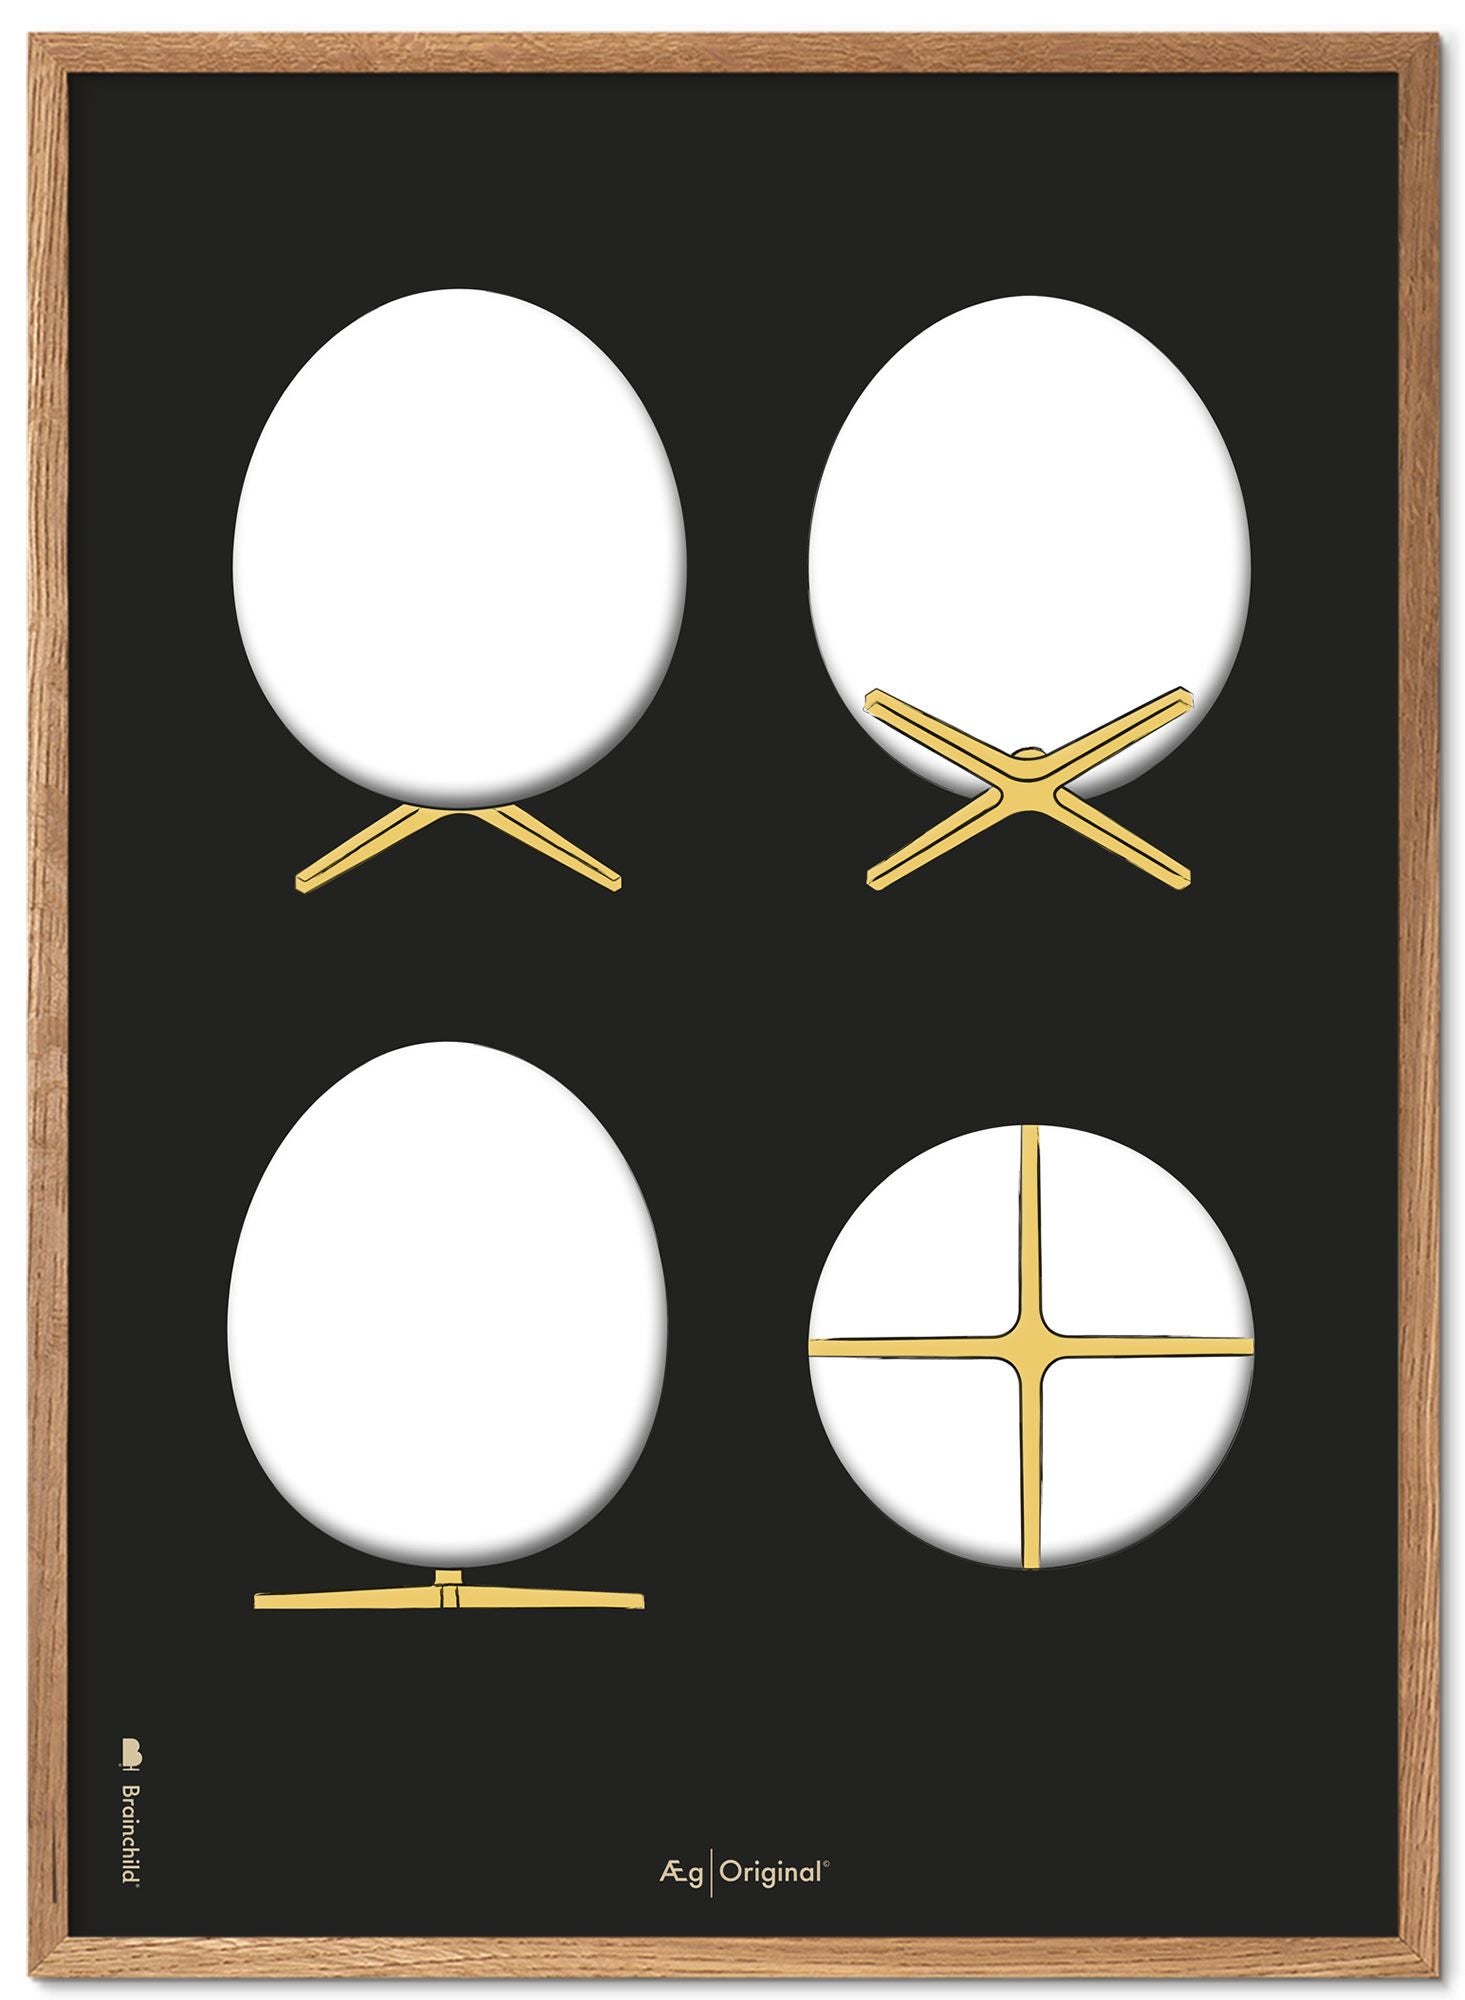 Prepare el marco de póster de bocetos de diseño de huevo hecho de madera clara de 70x100 cm, fondo negro